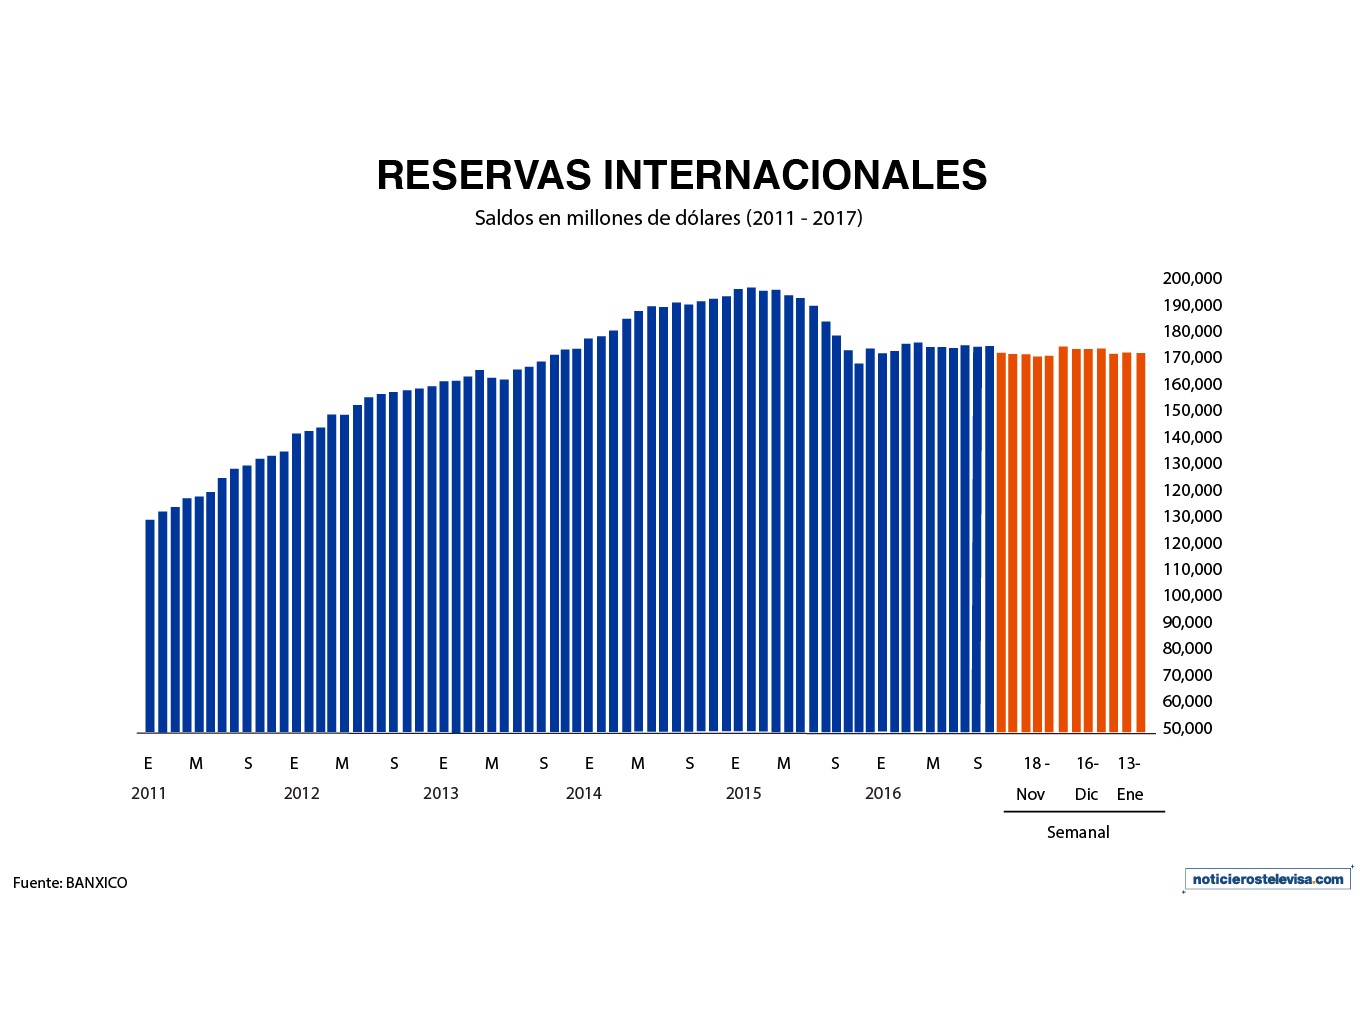 Reservas internacionales se contraen 206 mdd: Banxico (Noticieros Televisa)